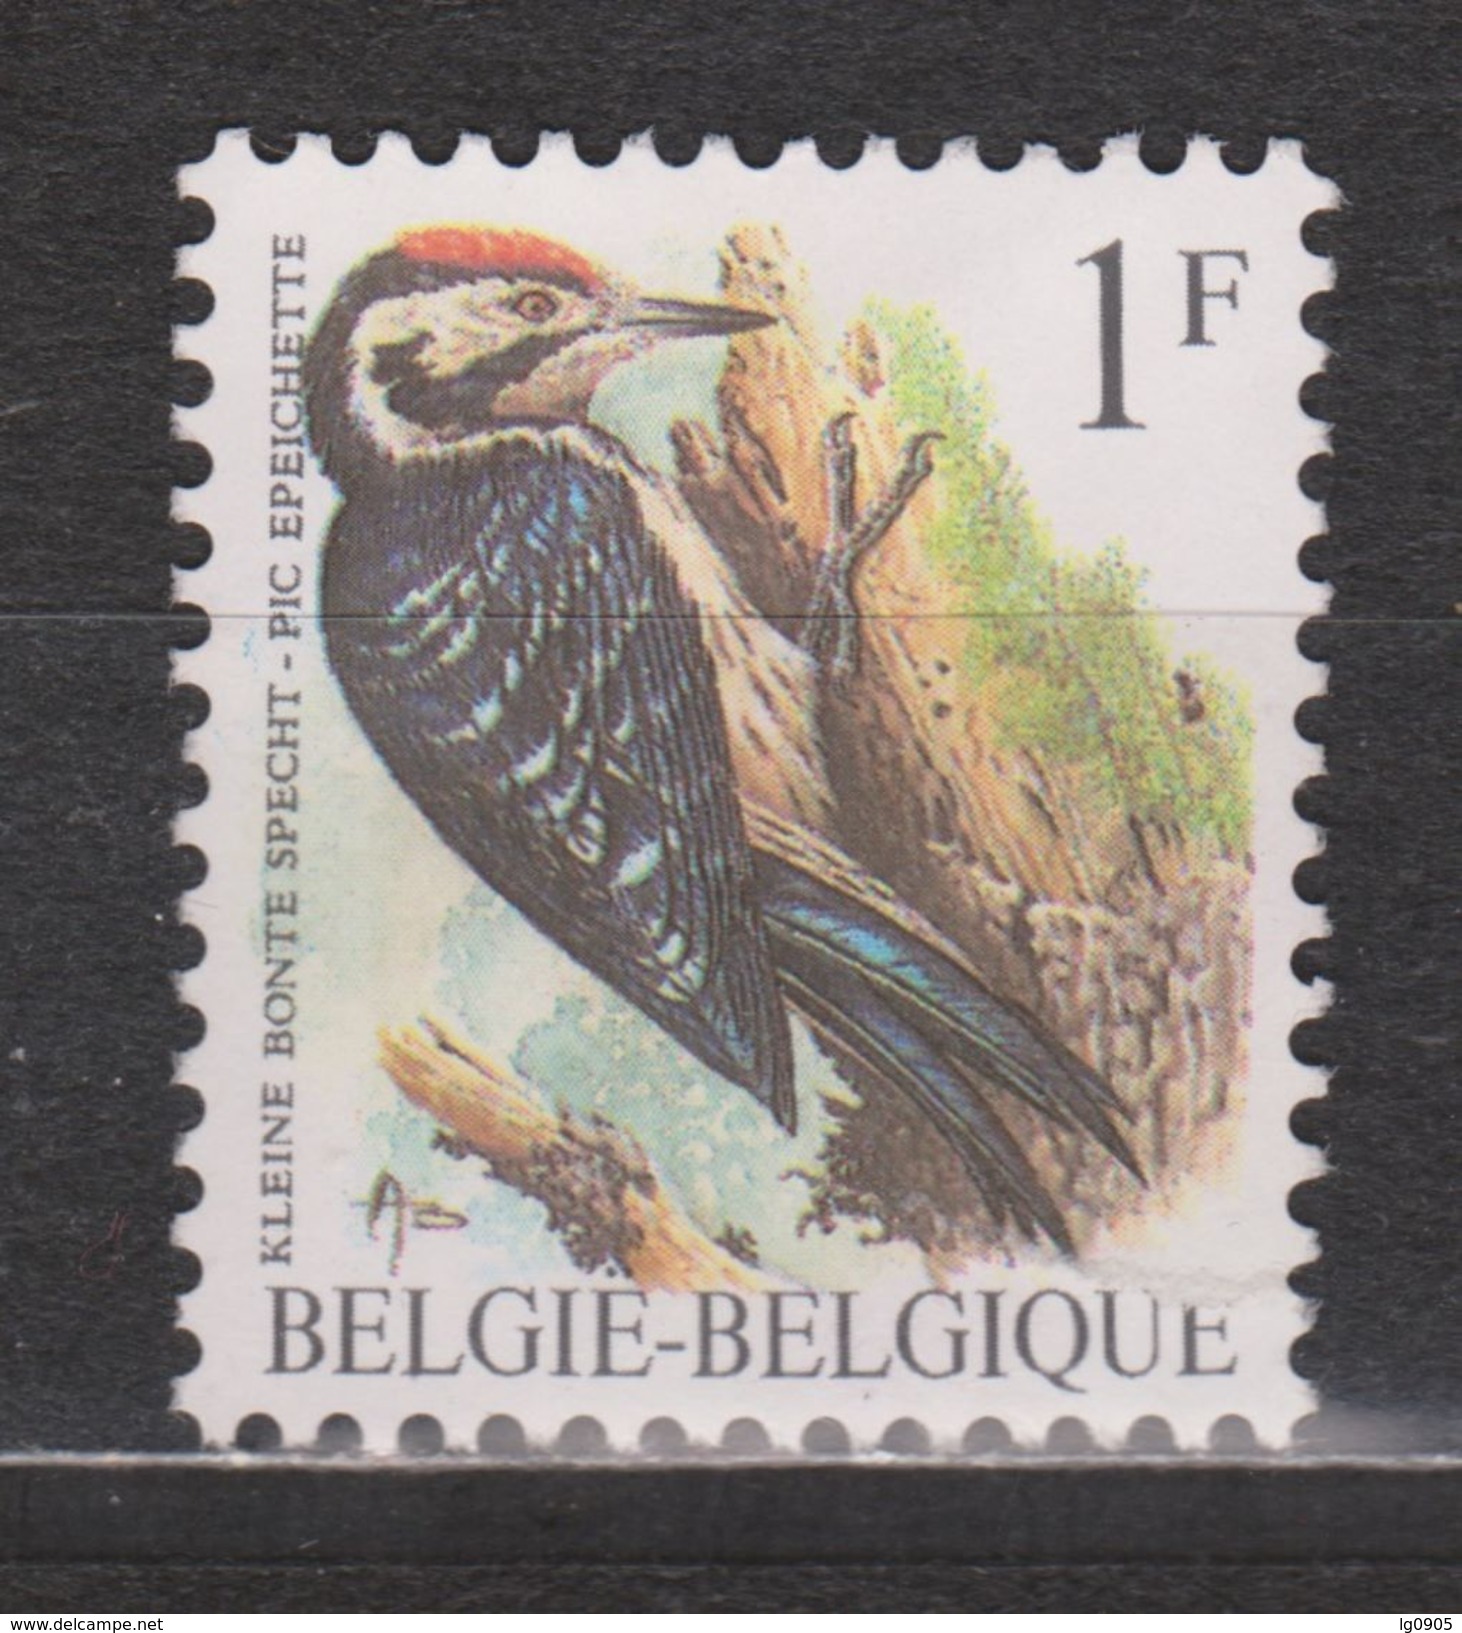 Belgie Belgique Belgica Used ; Specht, Pic, Pico, Woodpecker NOW MANY ANIMAL STAMPS FOR SALE - Spechten En Klimvogels